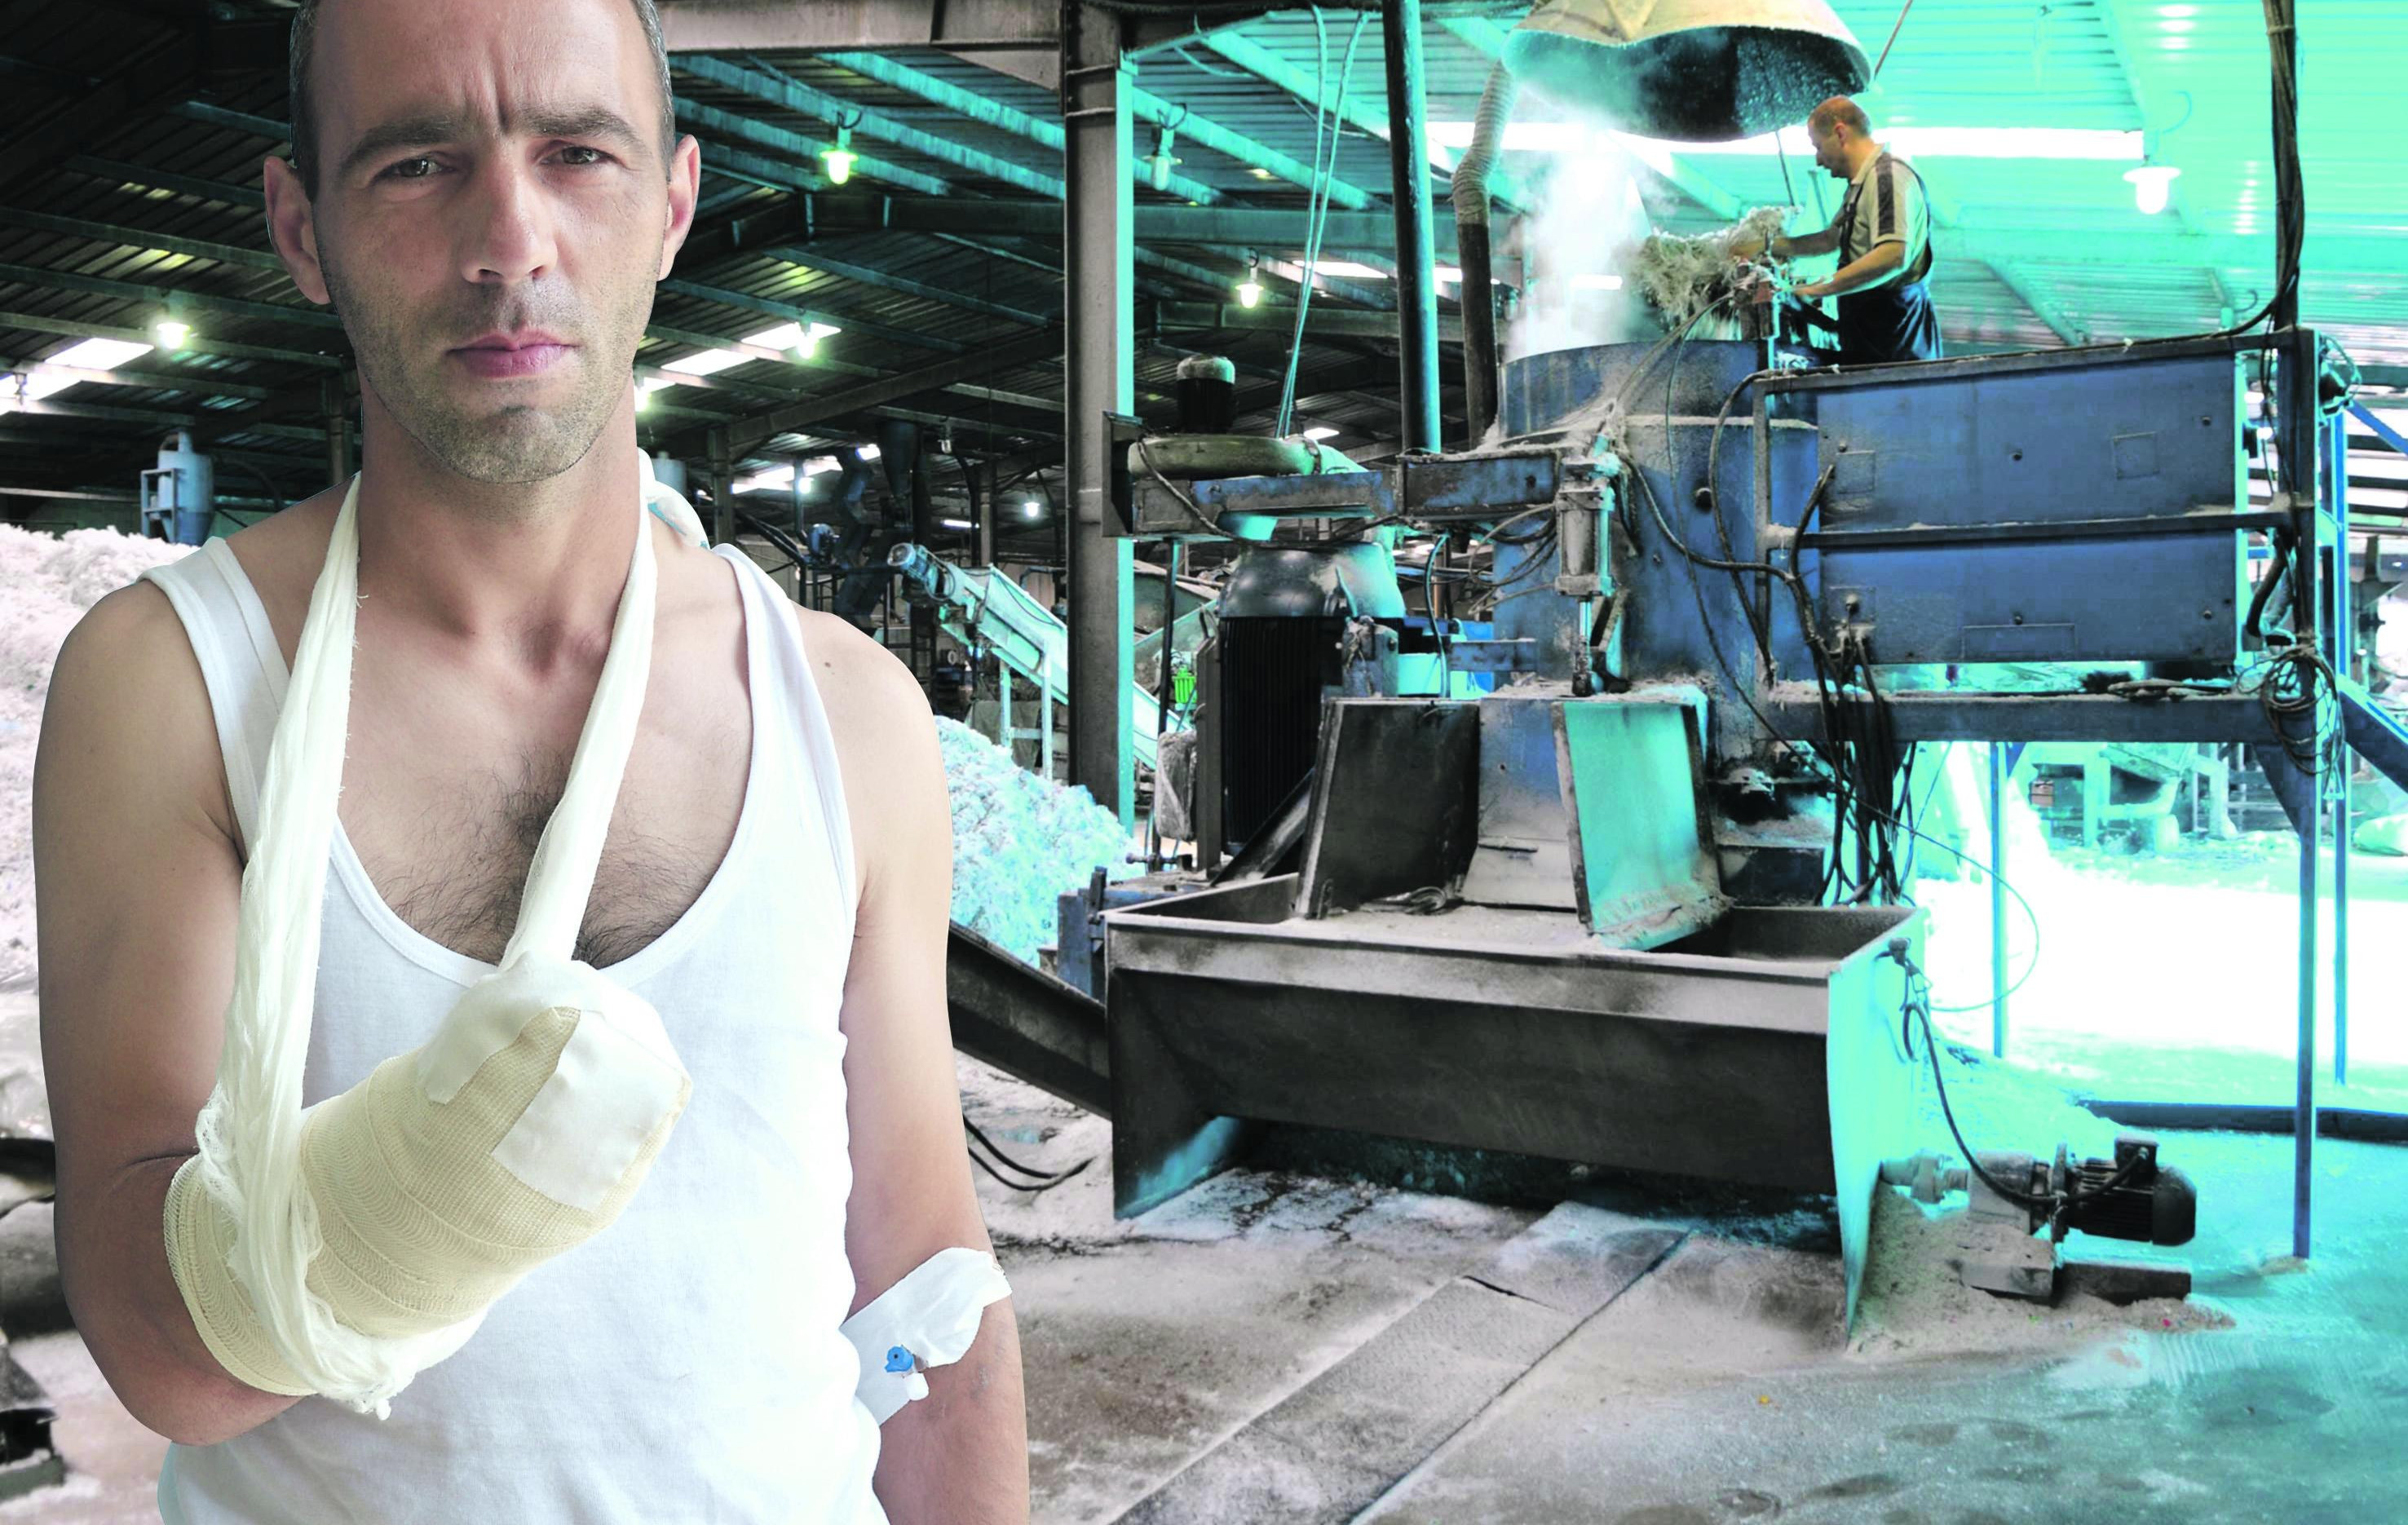 HTEO DA POMOGNE KOLEGINICI, PA OSTAO BEZ ŠAKE: Povređen radnik u fabrici za preradu plastike kod Kragujevca!